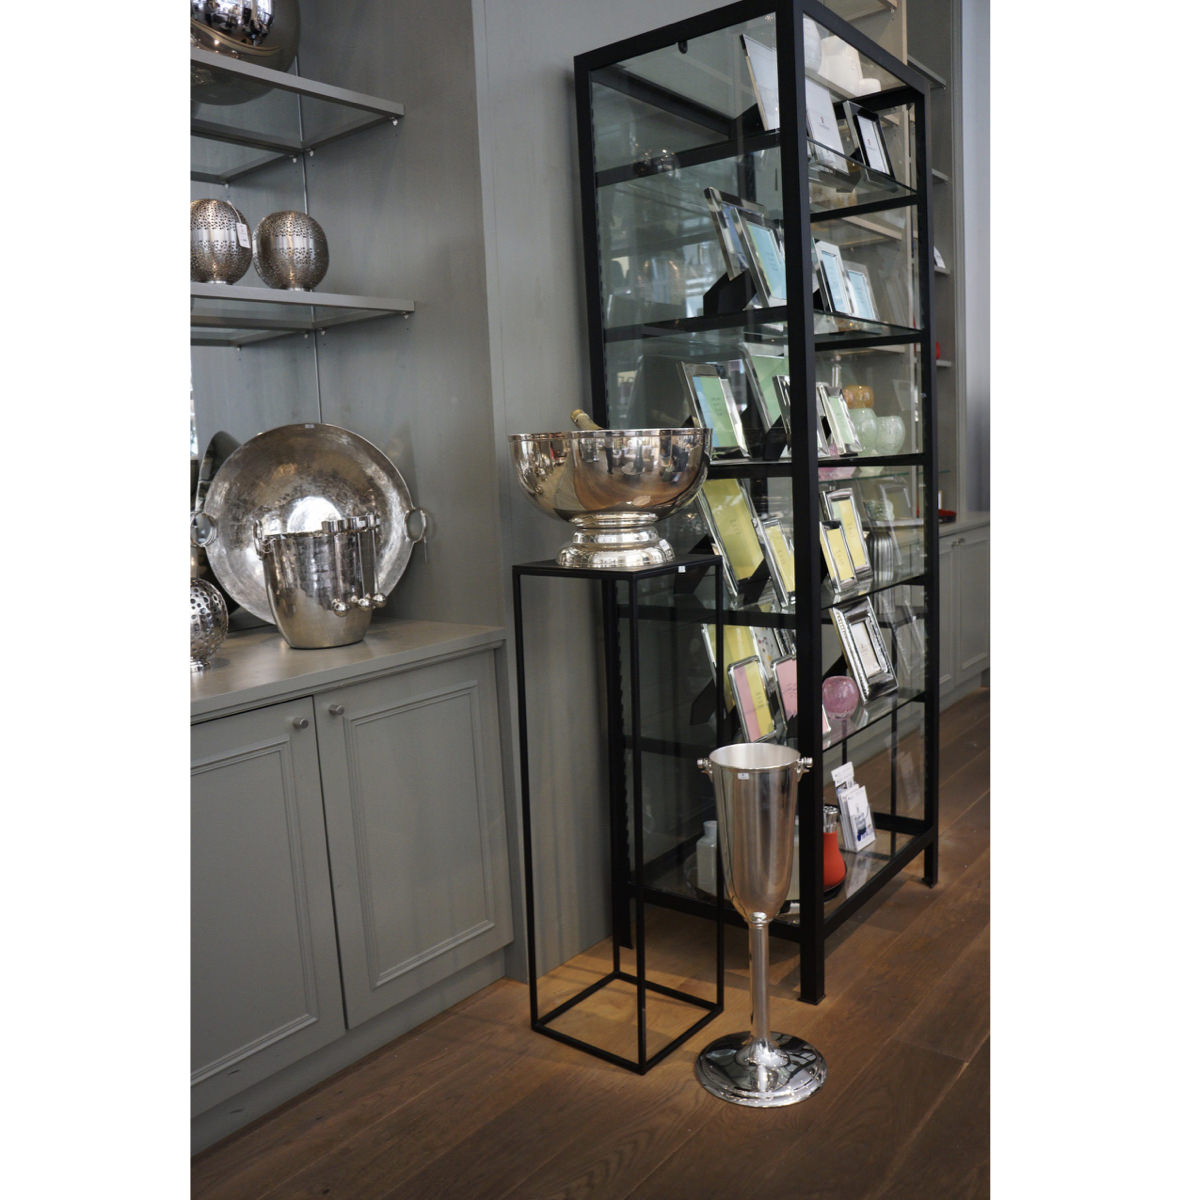 SCHNEEWITTCHEN glas cabinet by Lambert